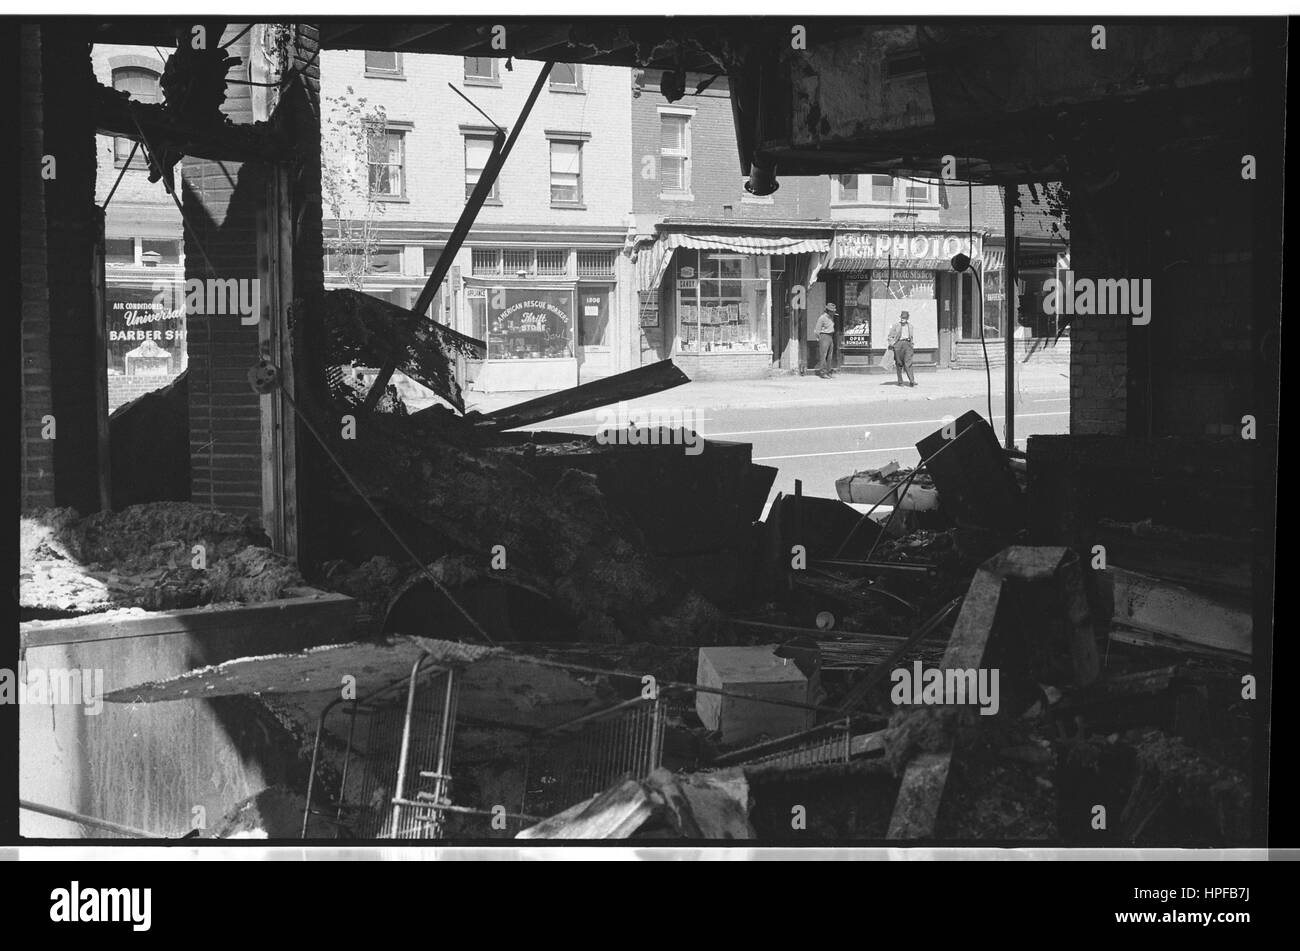 Ruines d'un magasin qui a été détruit lors des émeutes à la suite de l'assassinat du Dr Martin Luther King, Jr, Washington, DC, 04/16/1968. Photo par Warren K Leffler Banque D'Images